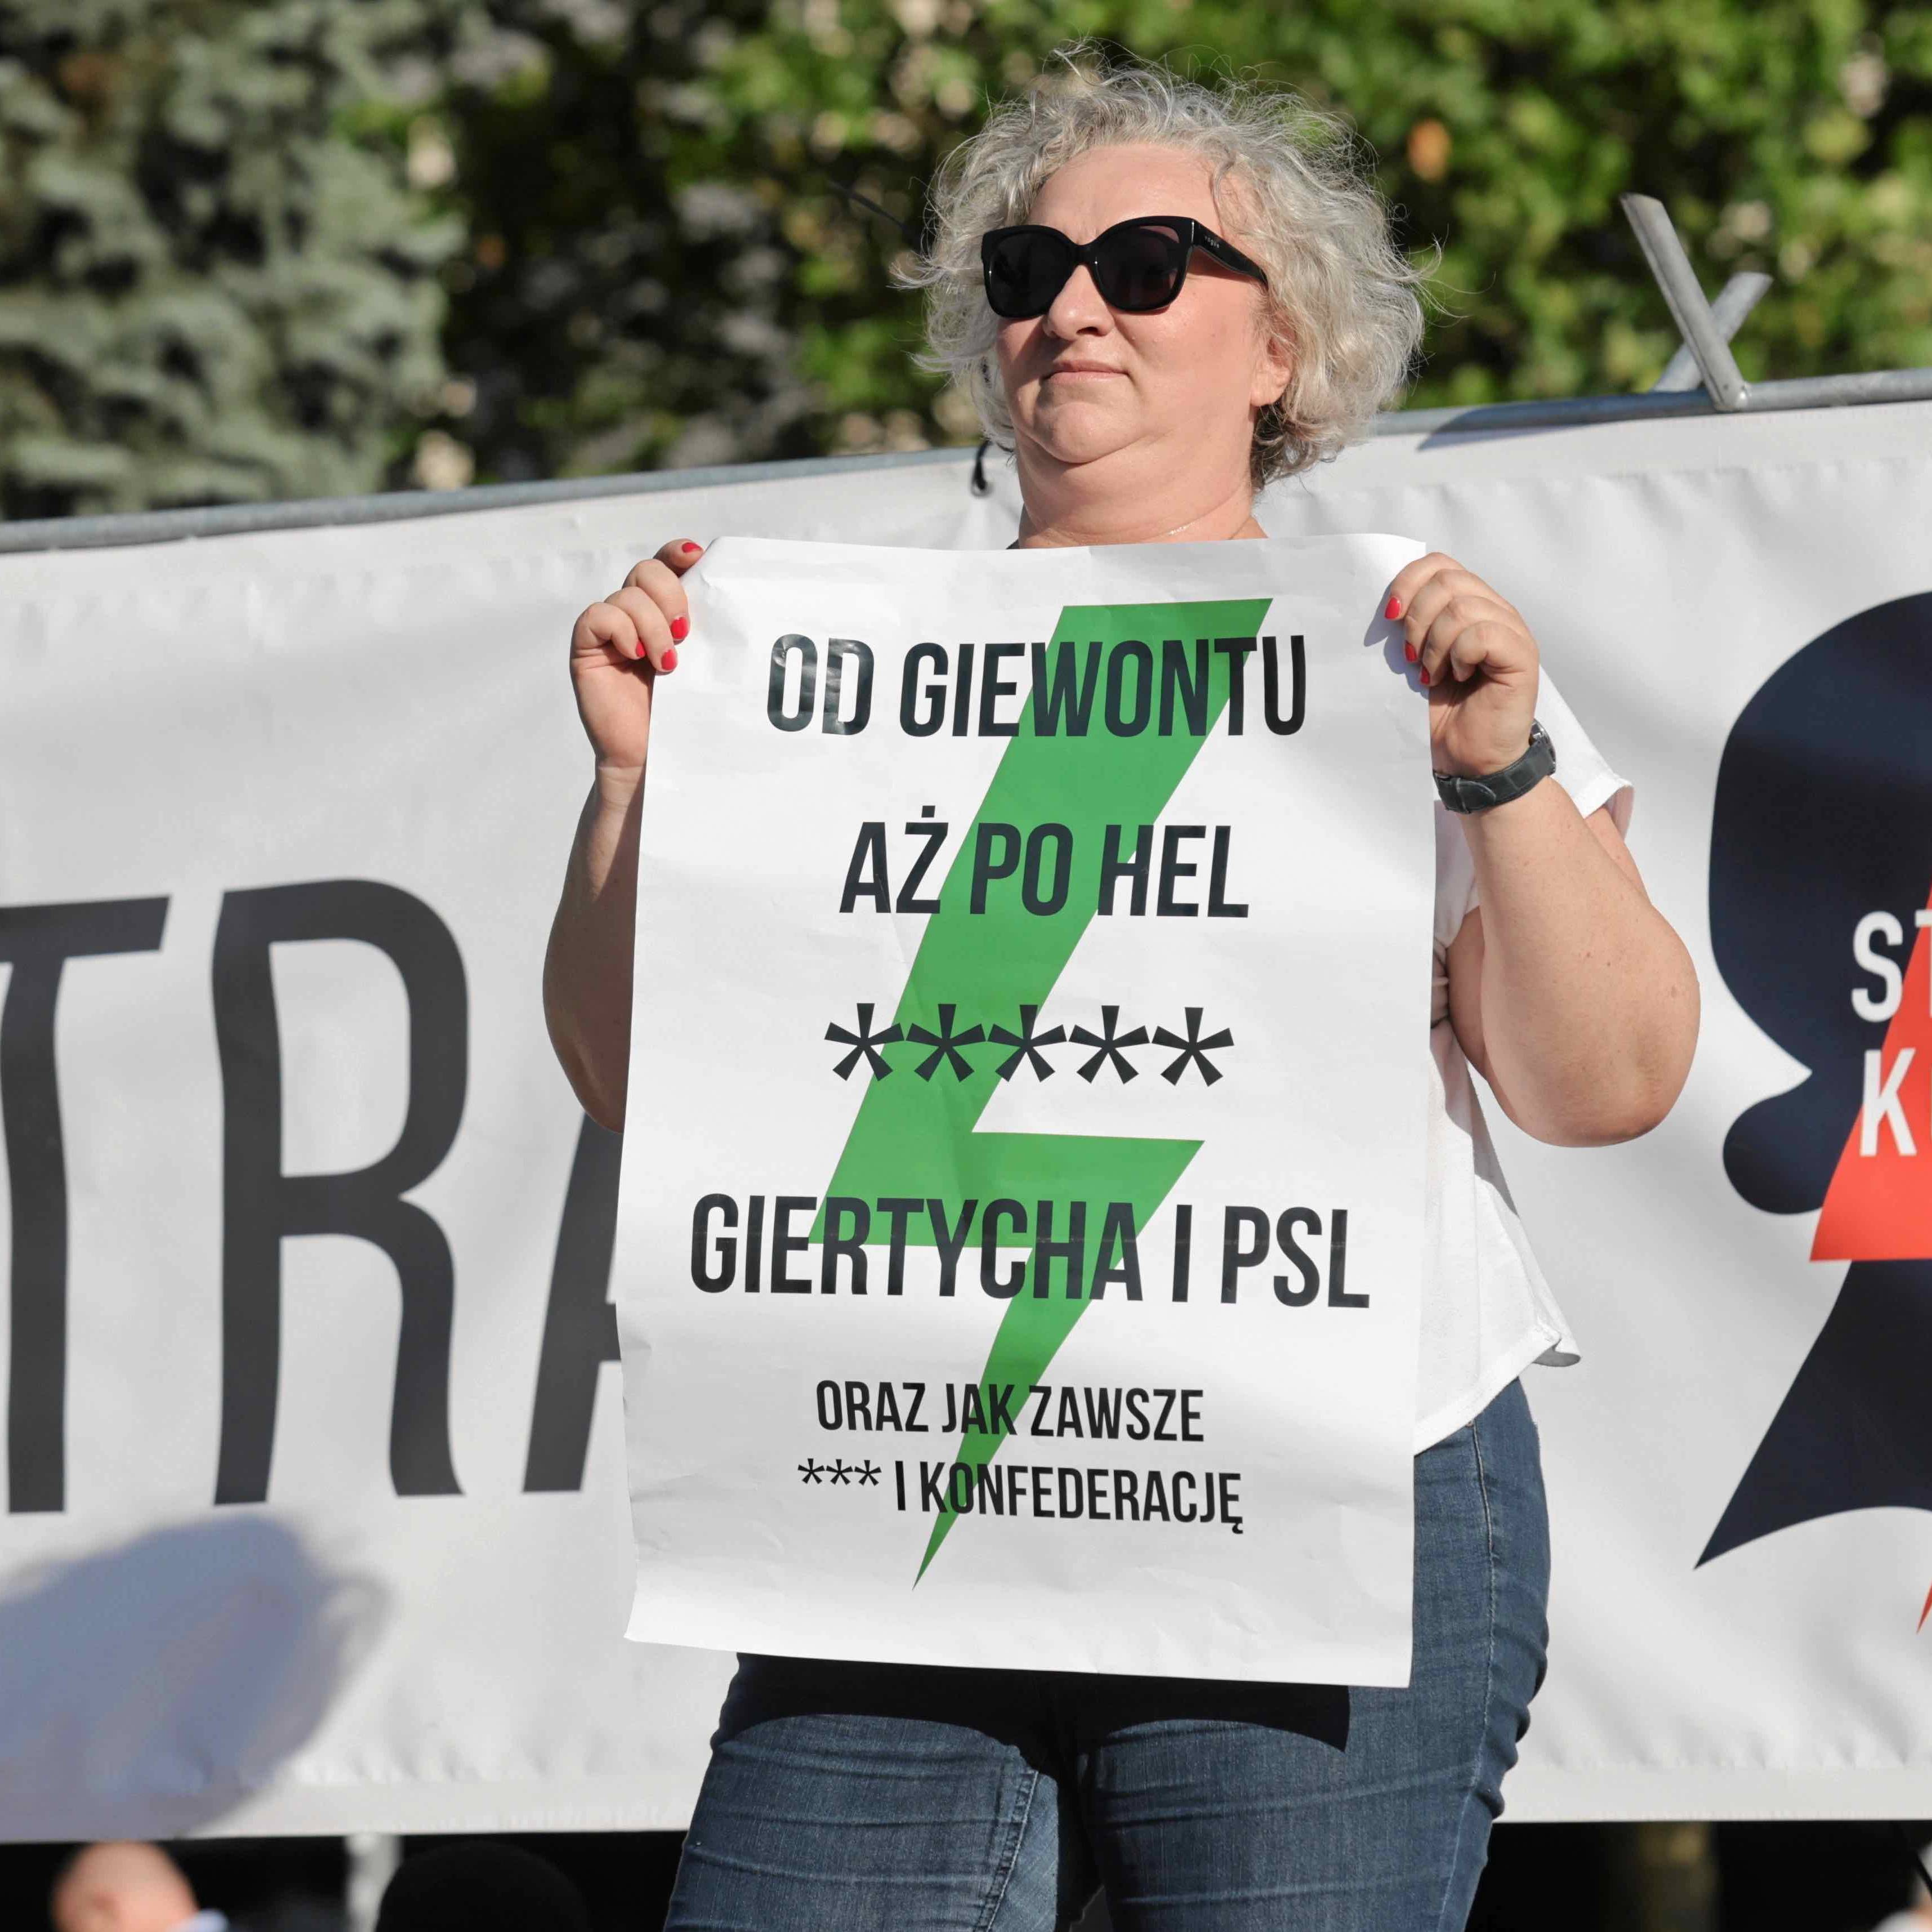 Kobieta stoi na scenie podczas demonstracji trzymając plakat z napisem Od Giewontu aż po Hel [pięć gwiazdek] Giertycha i PSL